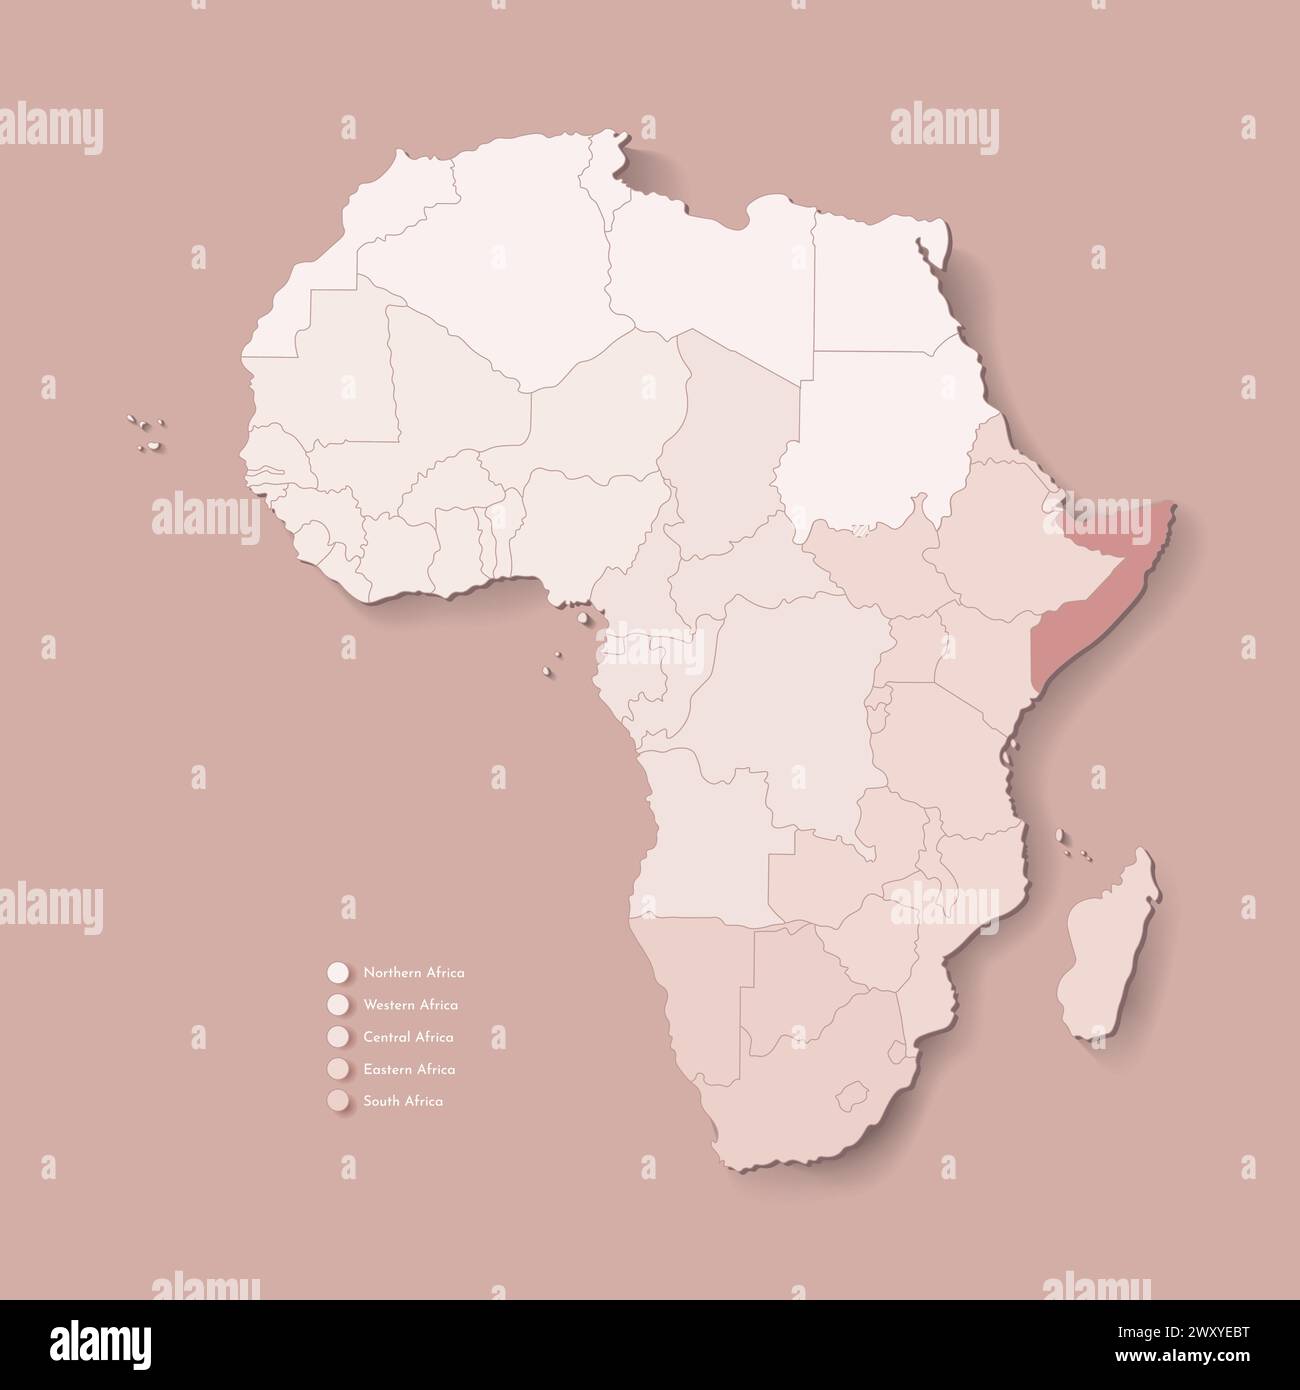 Illustrazione vettoriale con continente africano con confini di tutti gli stati e paese segnato Somalia. Mappa politica in colori marroni con occidentale, sud AN Illustrazione Vettoriale